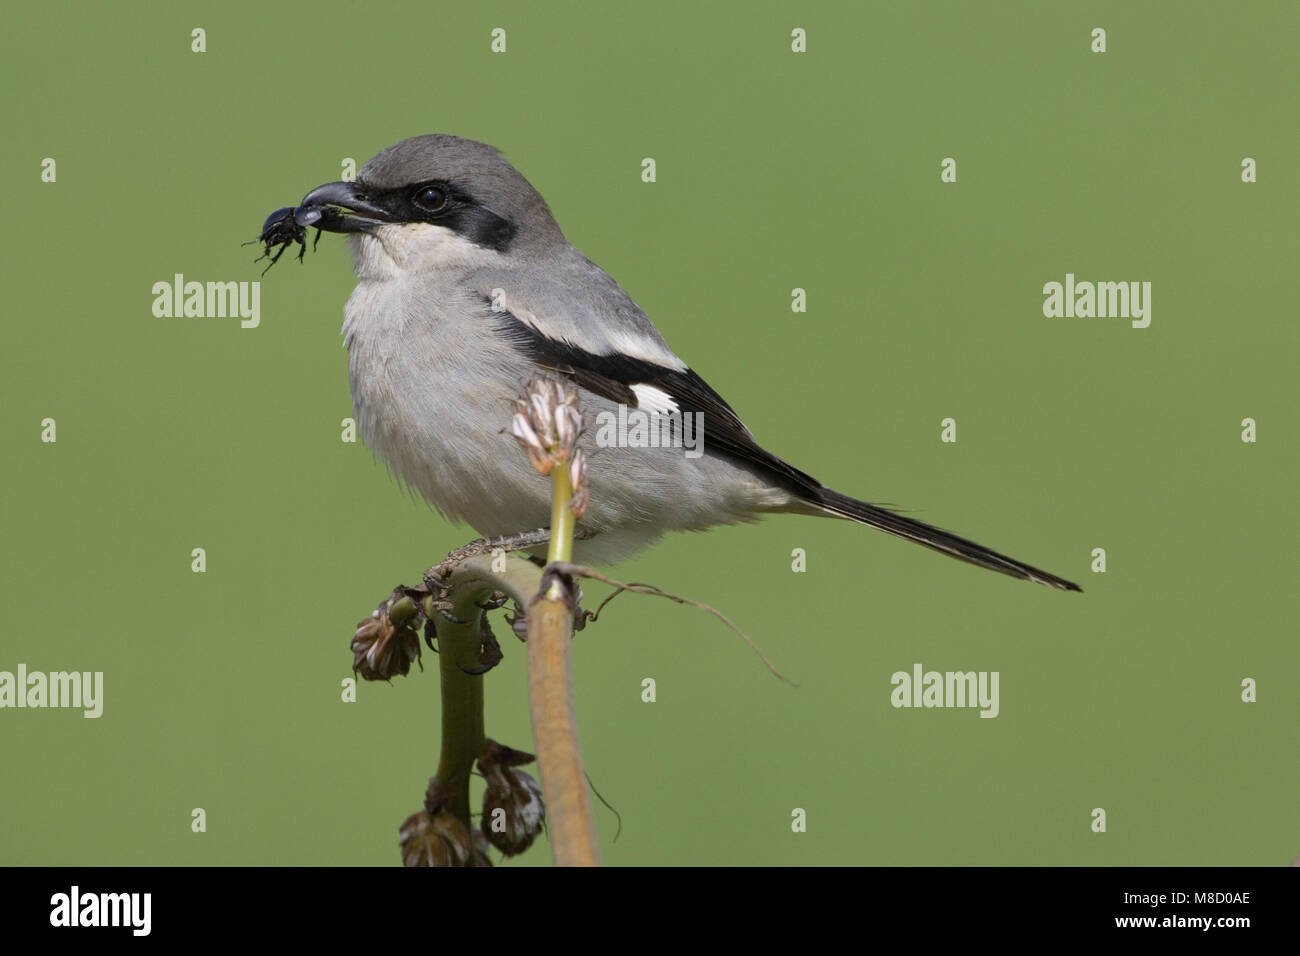 Zuidelijke Klapekster in takje; Southern Grey Shrike perched on twig Stock Photo